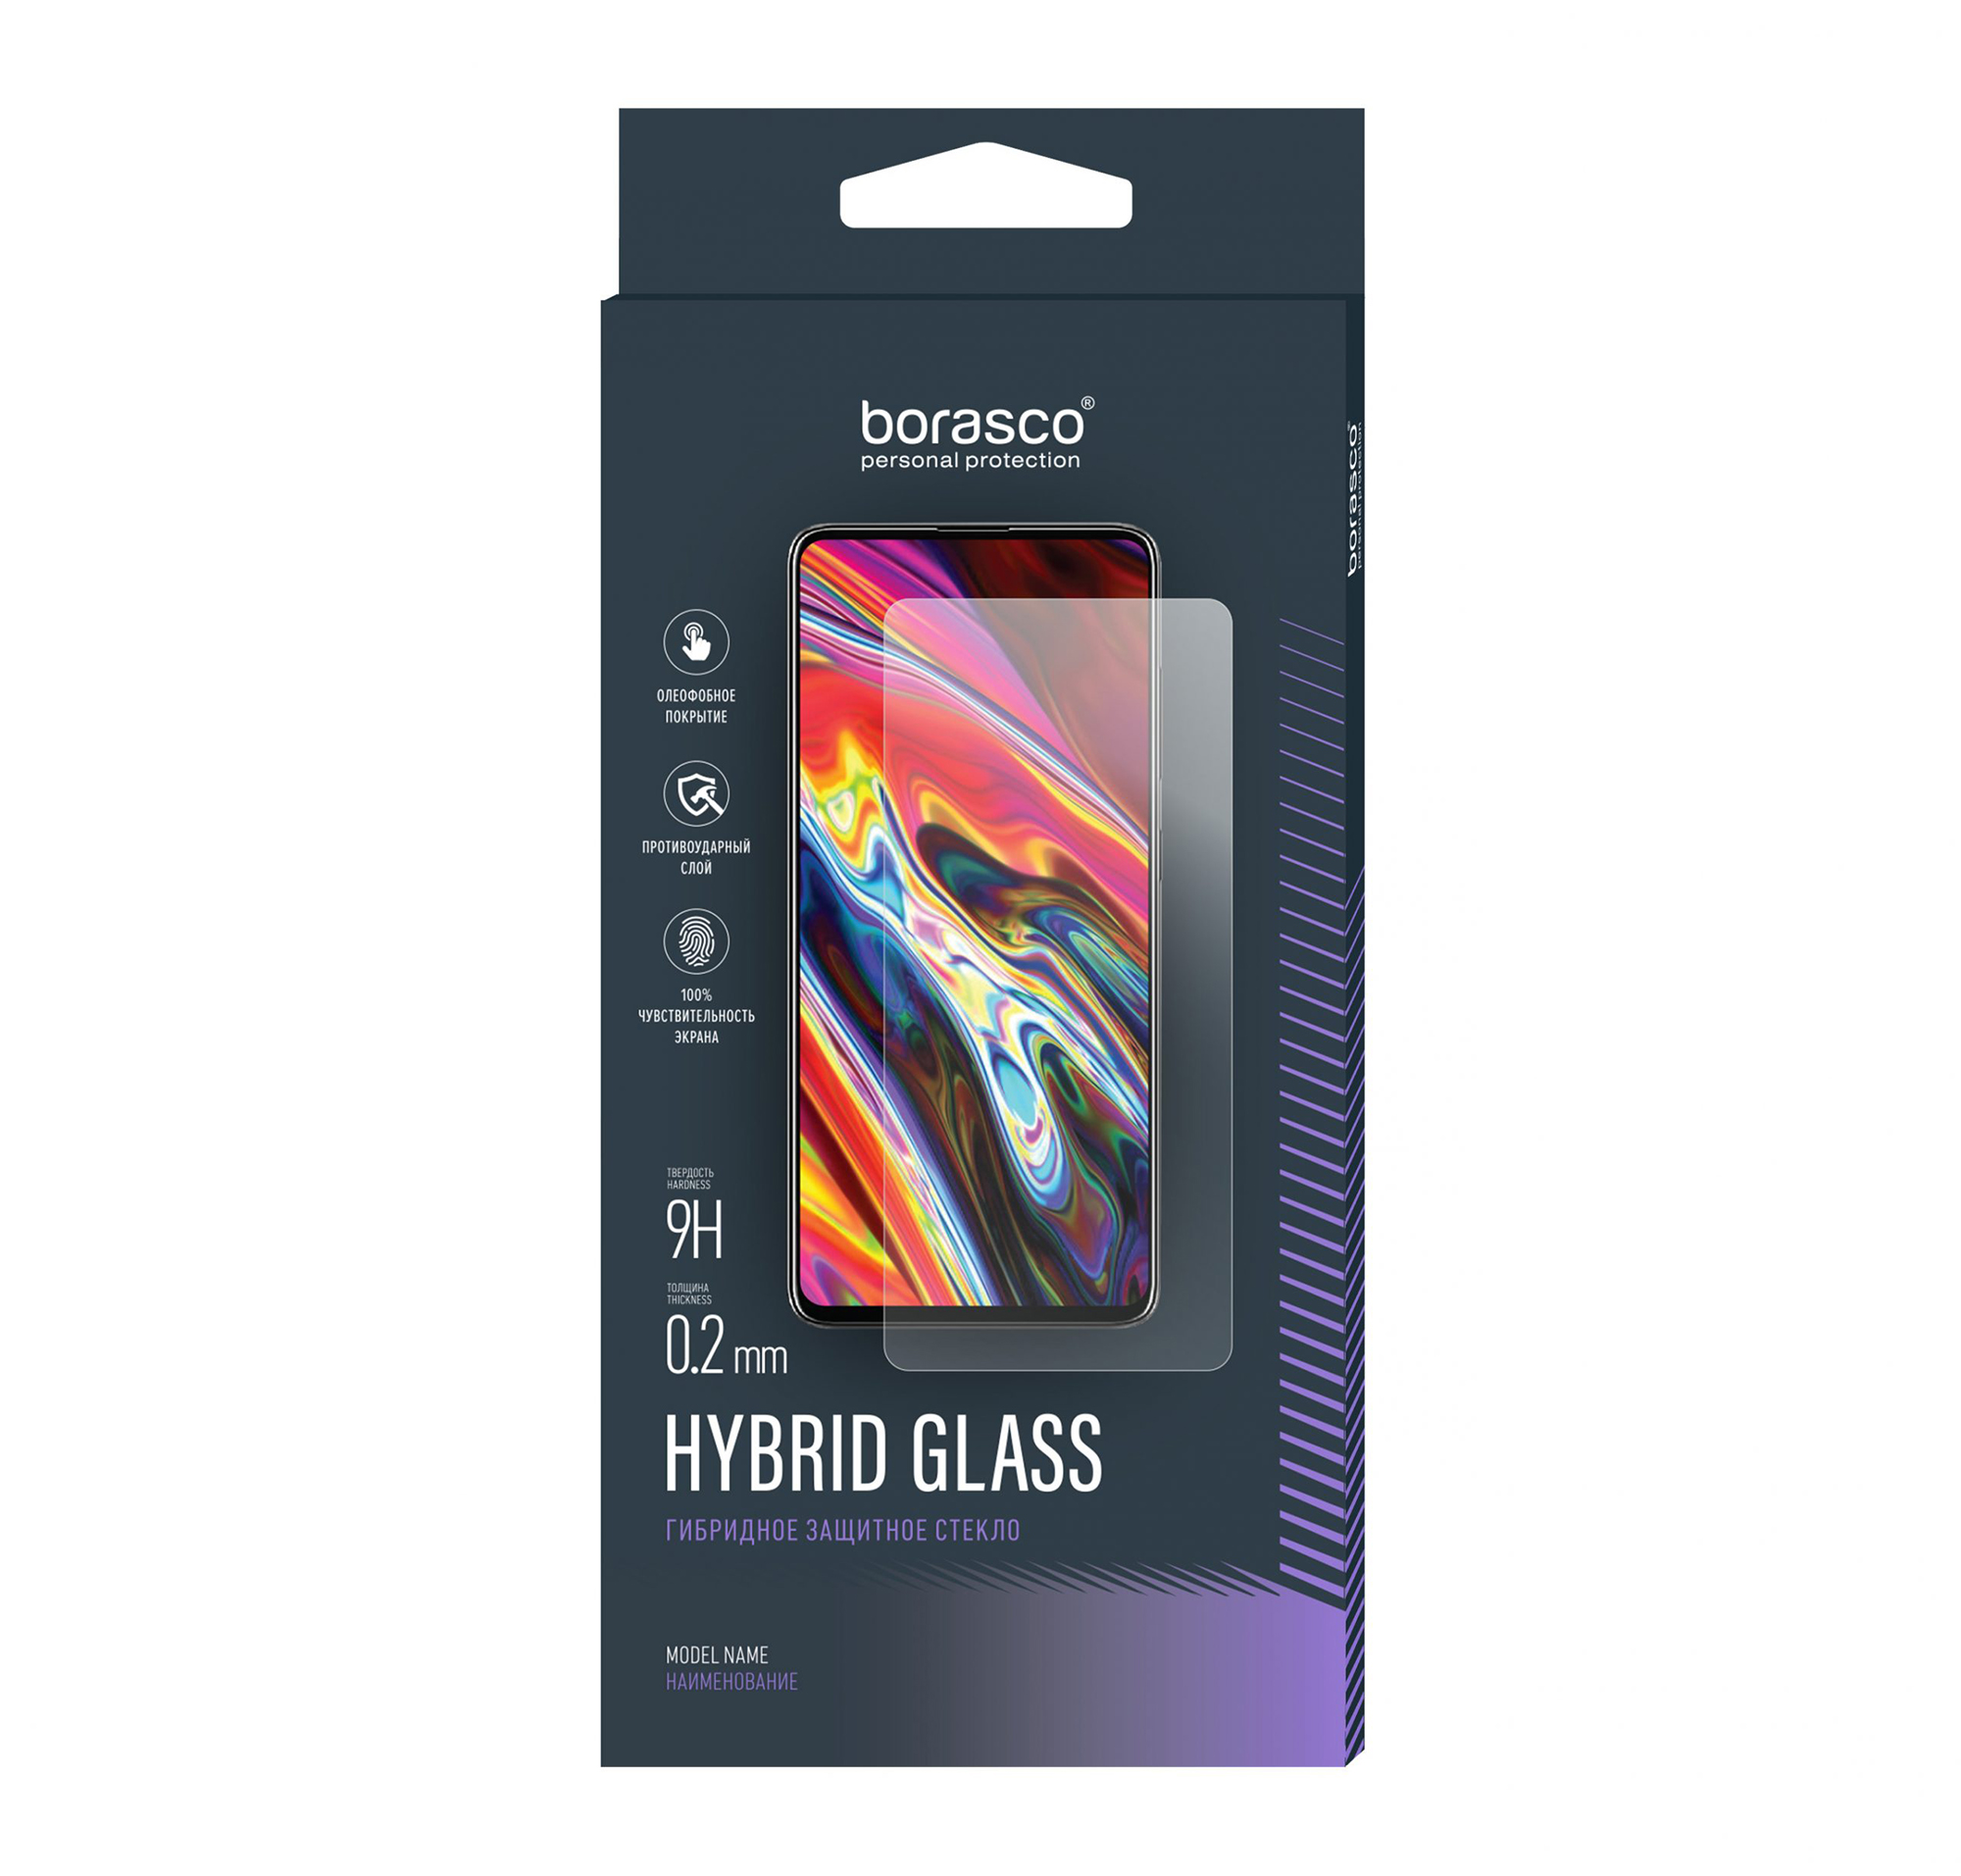 Защитное стекло Hybrid Glass для Apple iPhone 12 mini защитное стекло для apple iphone 12 mini защитная пленка для apple iphone 12 mini 3d стекло на айфон 12 мини